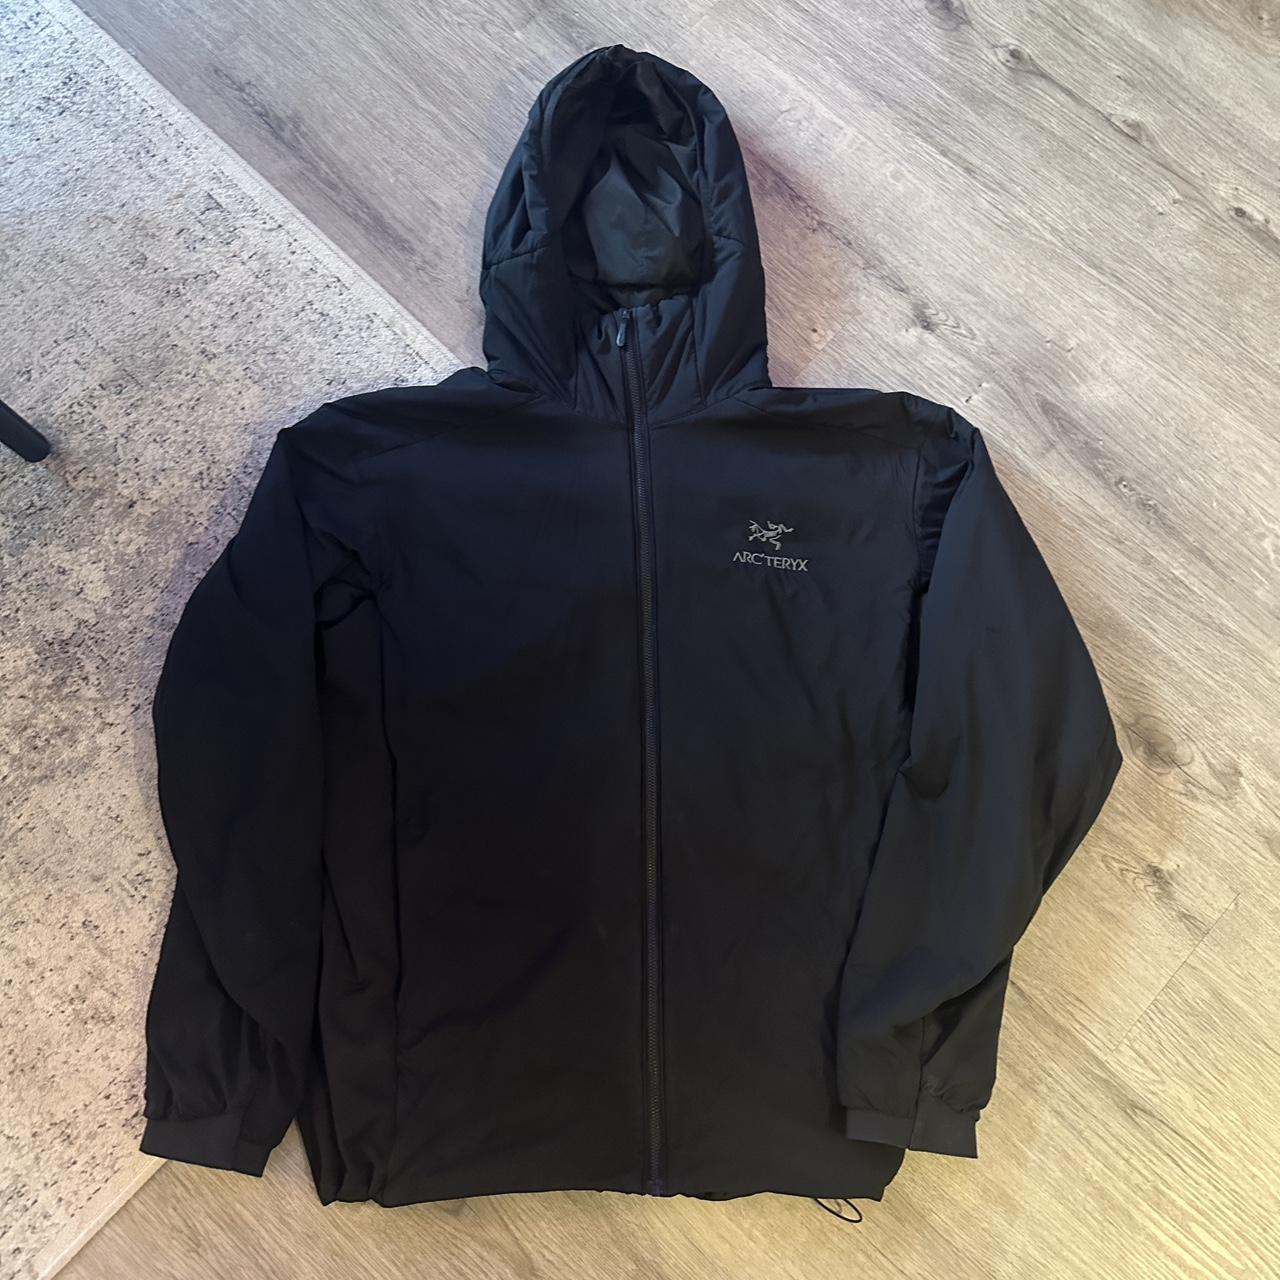 Men’s Arc’teryx Atom LT Jacket/Coat, black size... - Depop